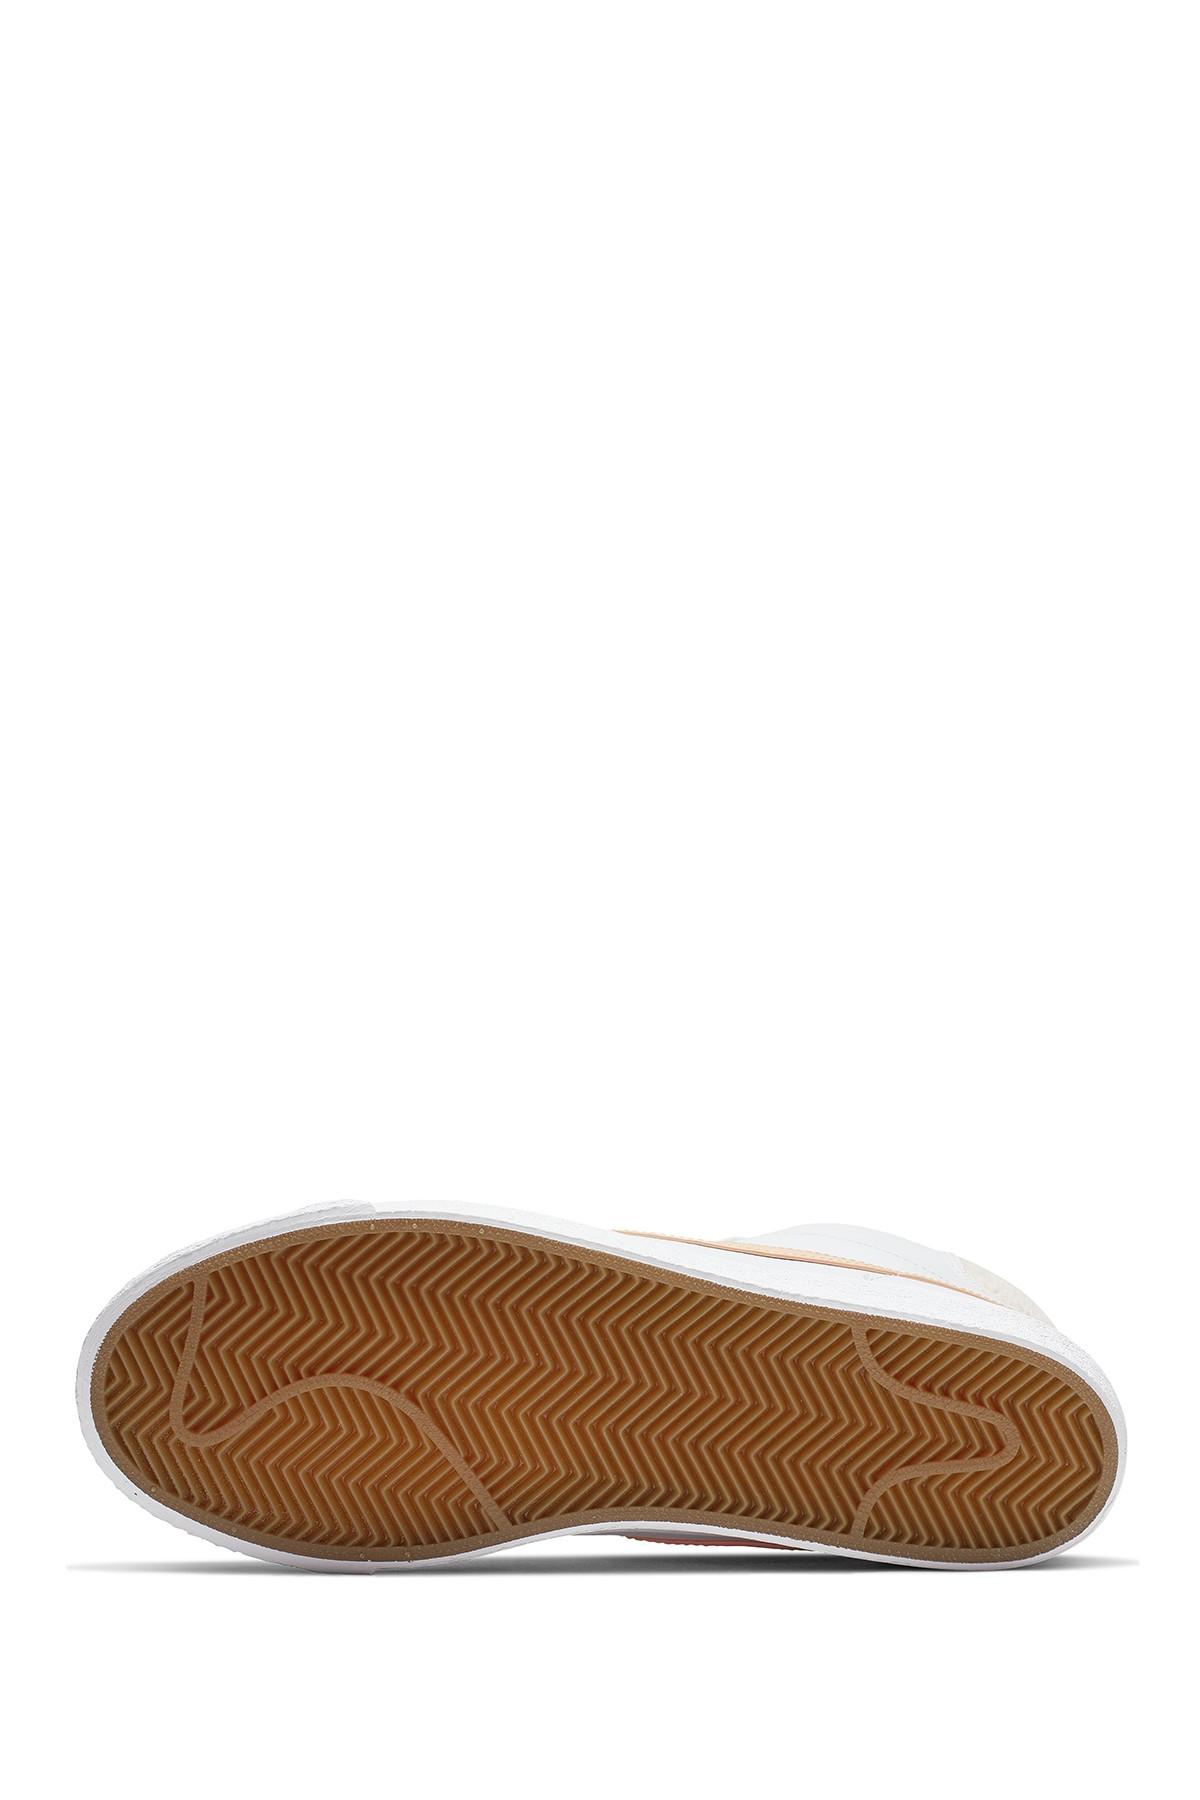 Nike Sb Zoom Blazer Mid Premium Skate Shoe in White for Men - Save 